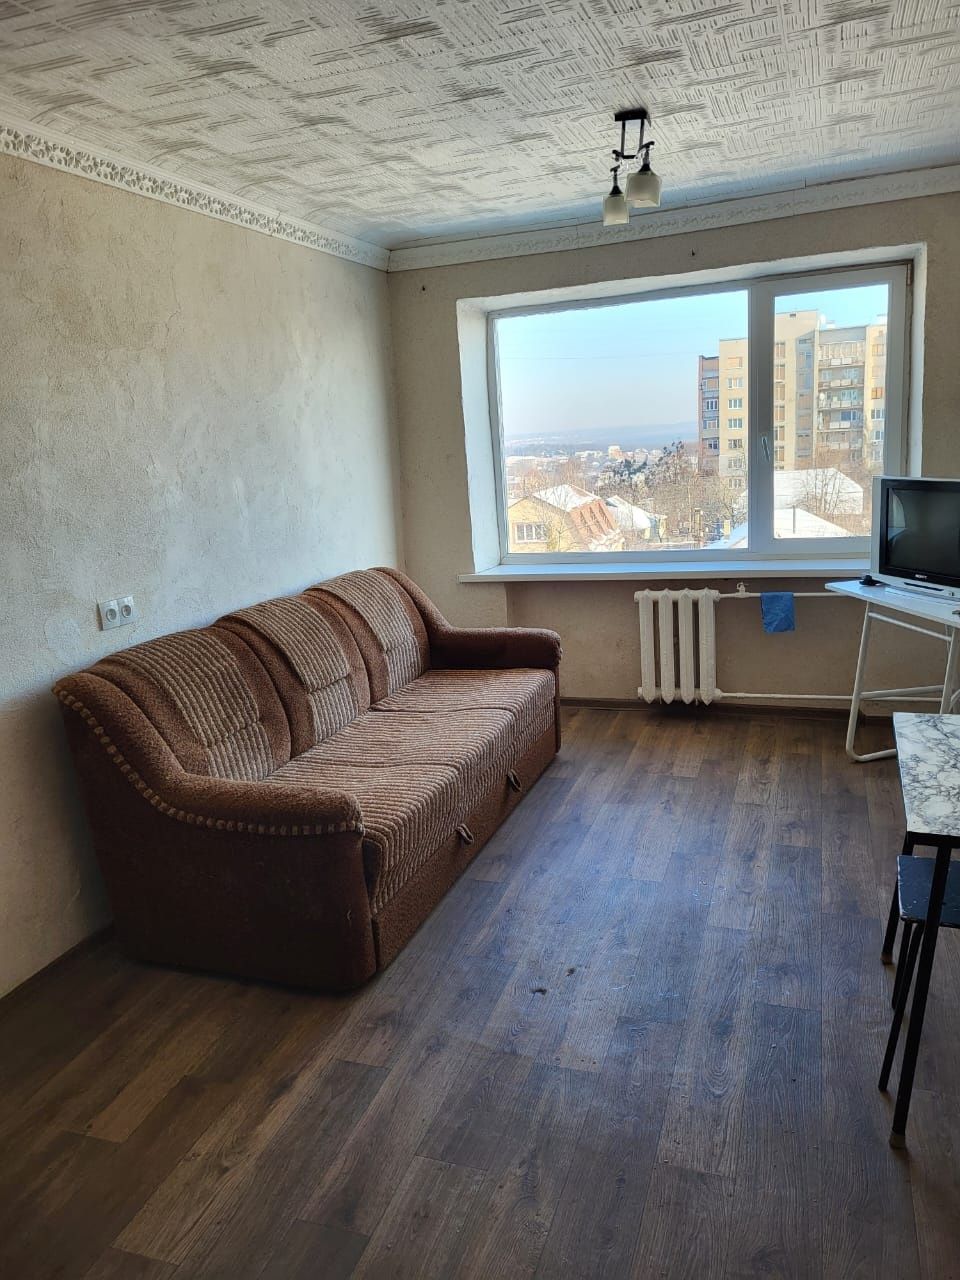 Аренда комнаты общежития район Жуковского